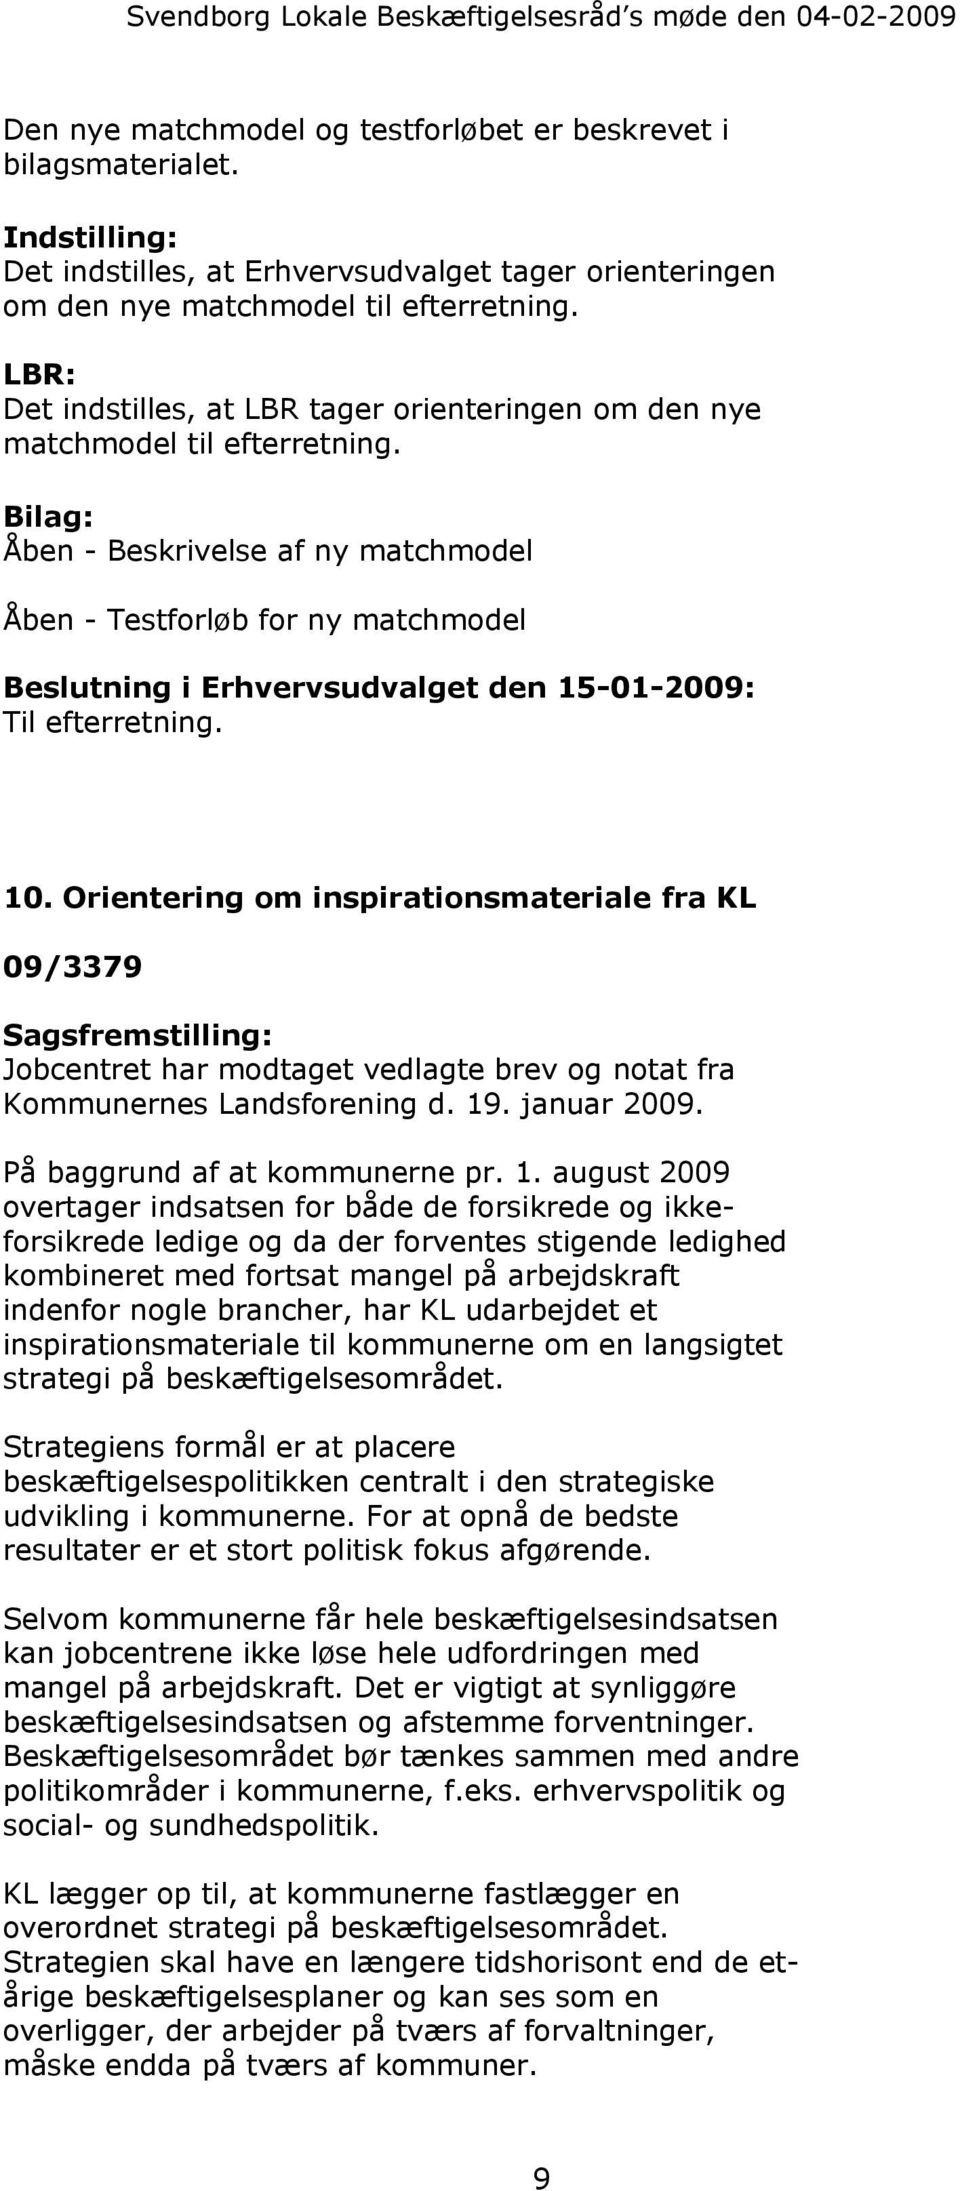 Bilag: Åben - Beskrivelse af ny matchmodel Åben - Testforløb for ny matchmodel Beslutning i Erhvervsudvalget den 15-01-2009: Til efterretning. 10.